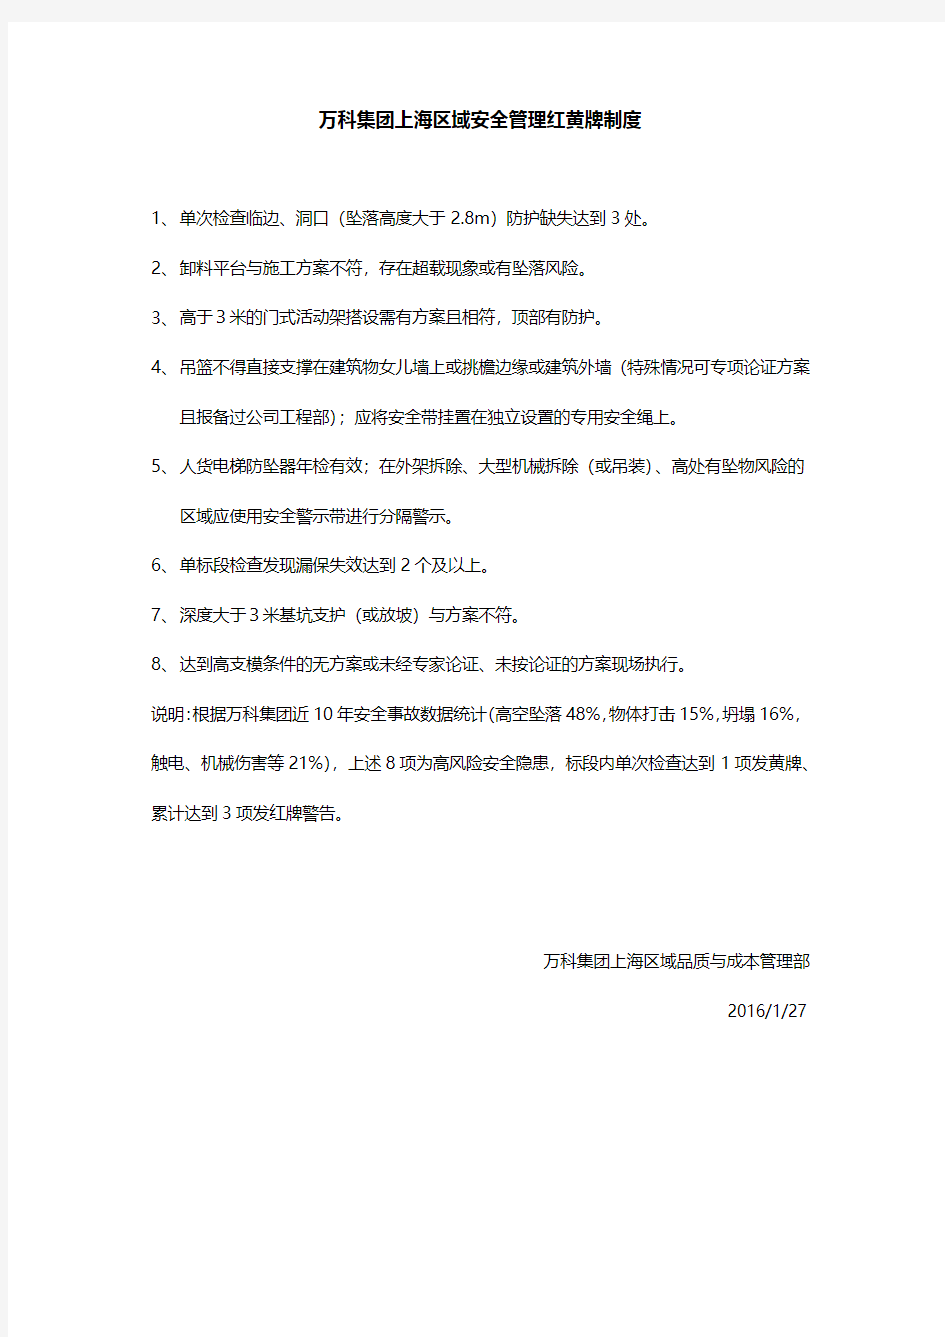 万科集团S2上海区域安全管理红黄牌制度